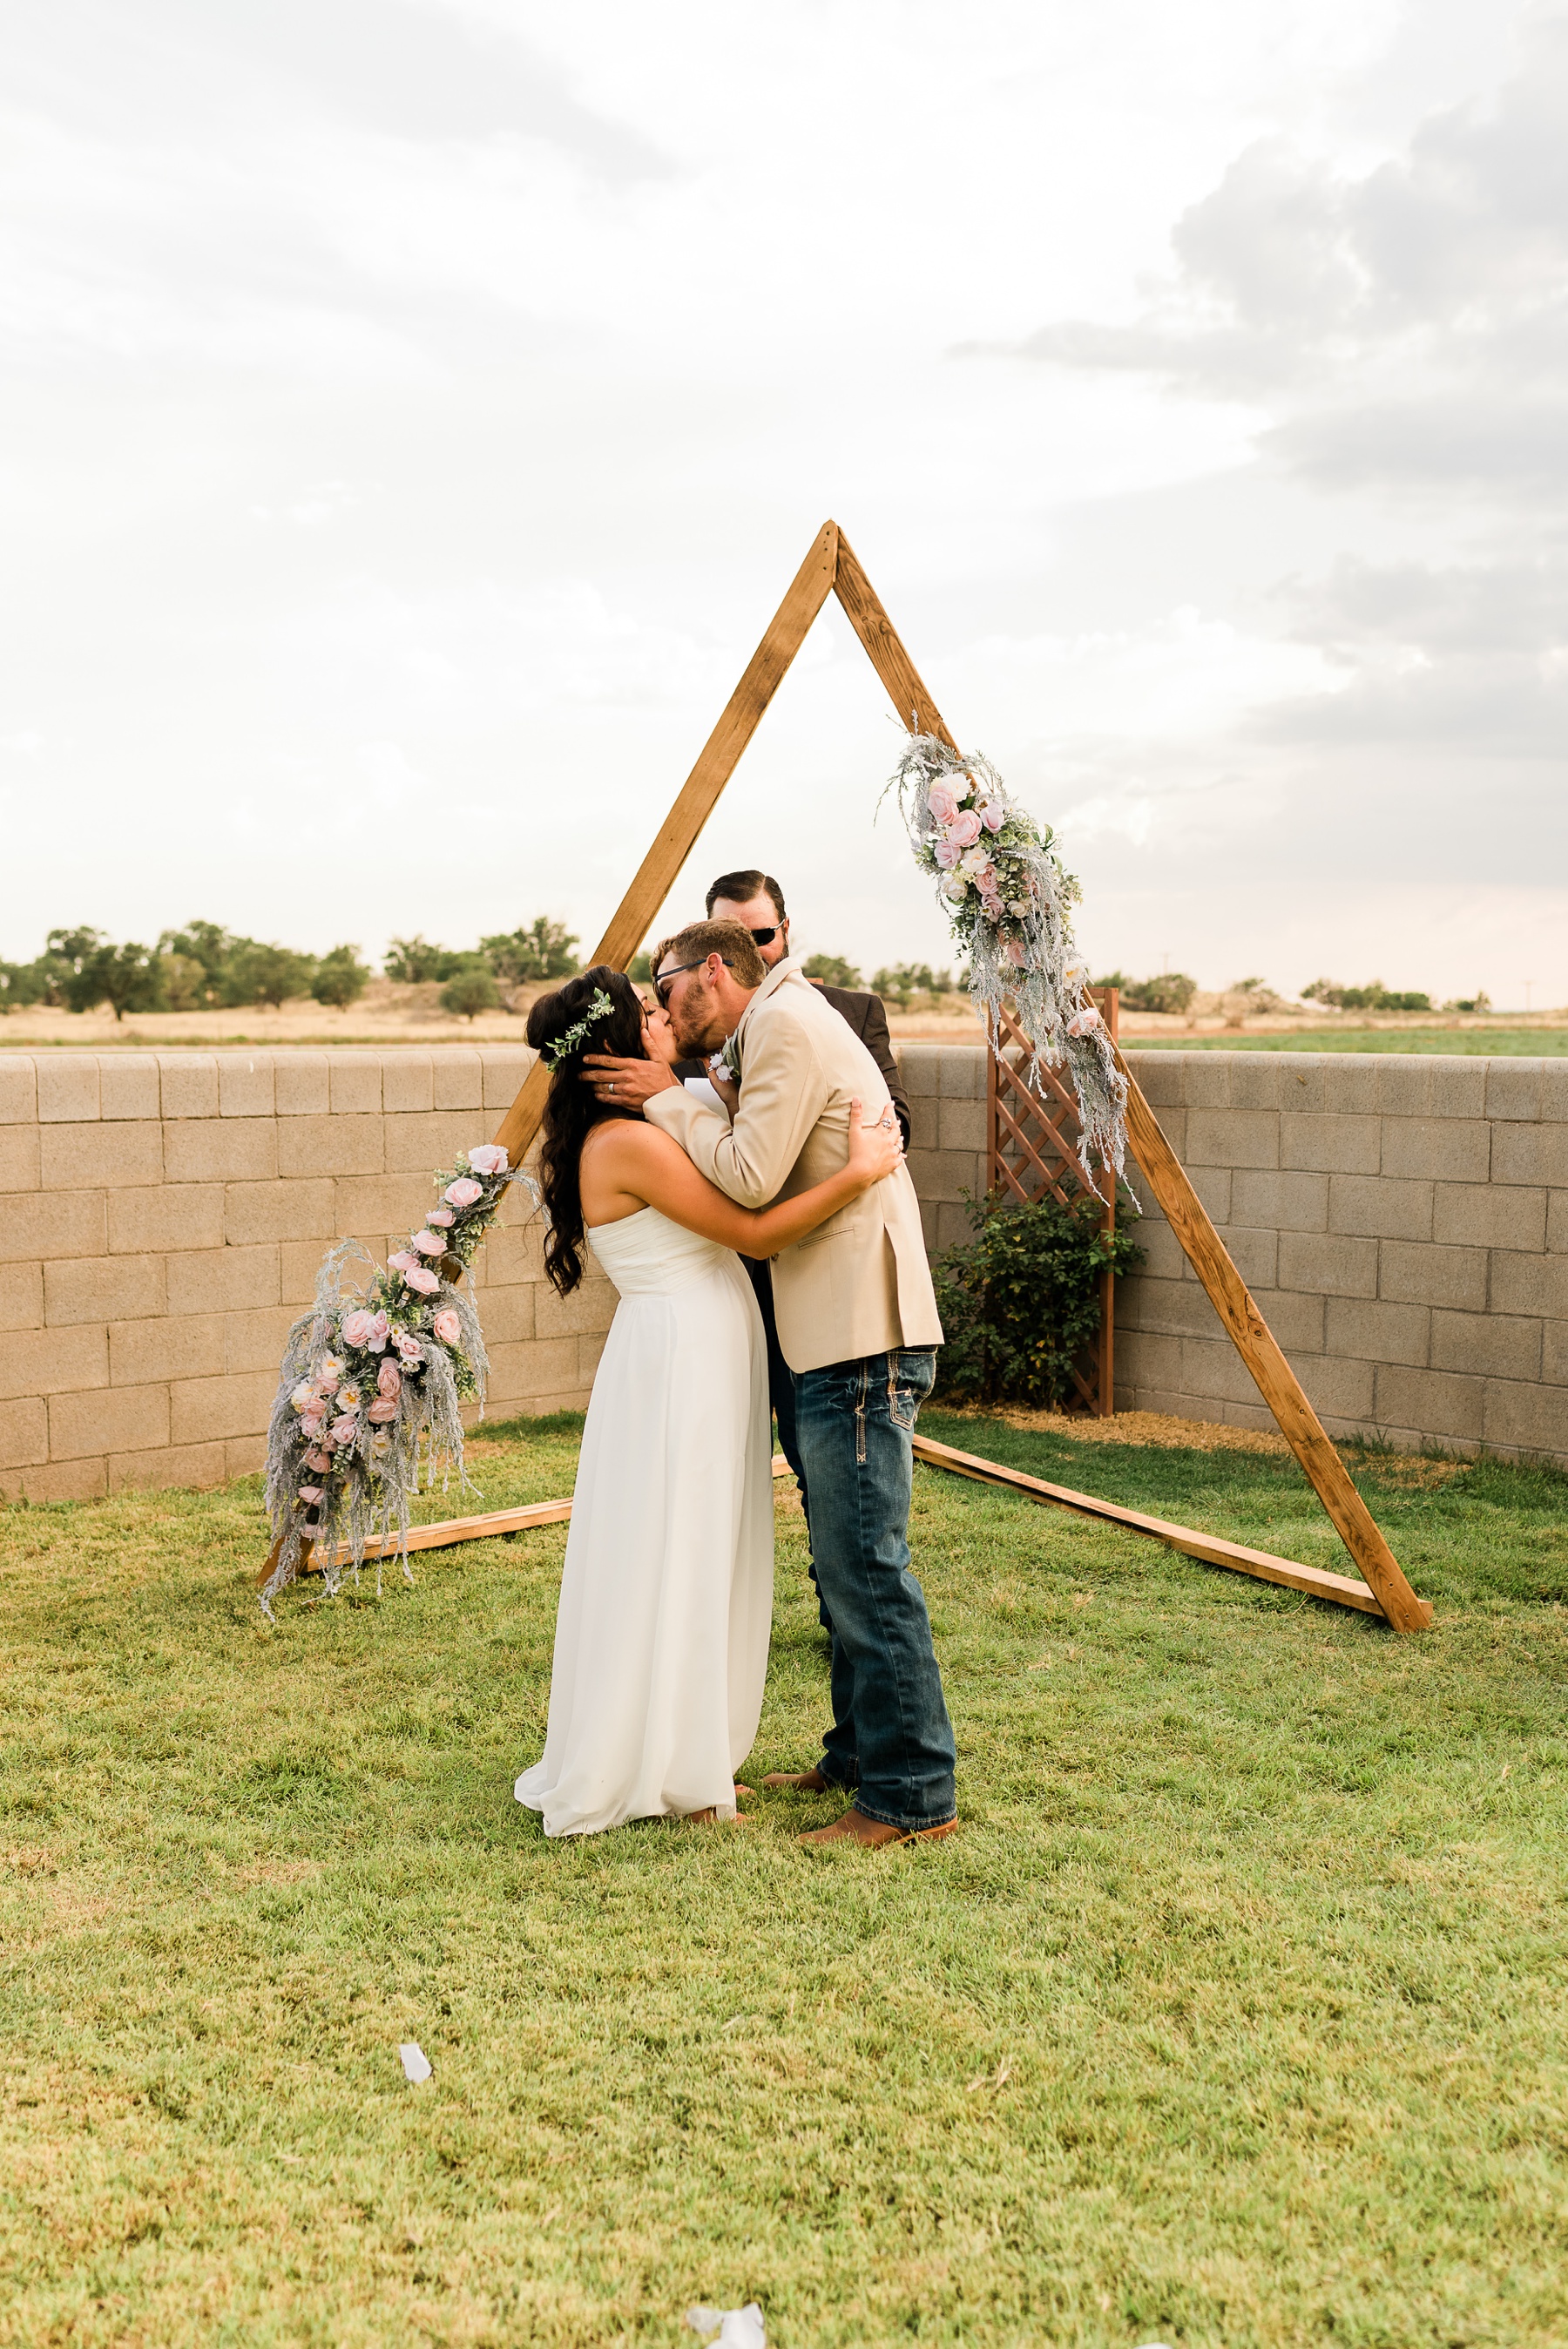 Backyard New Mexico Wedding Geometric Arch